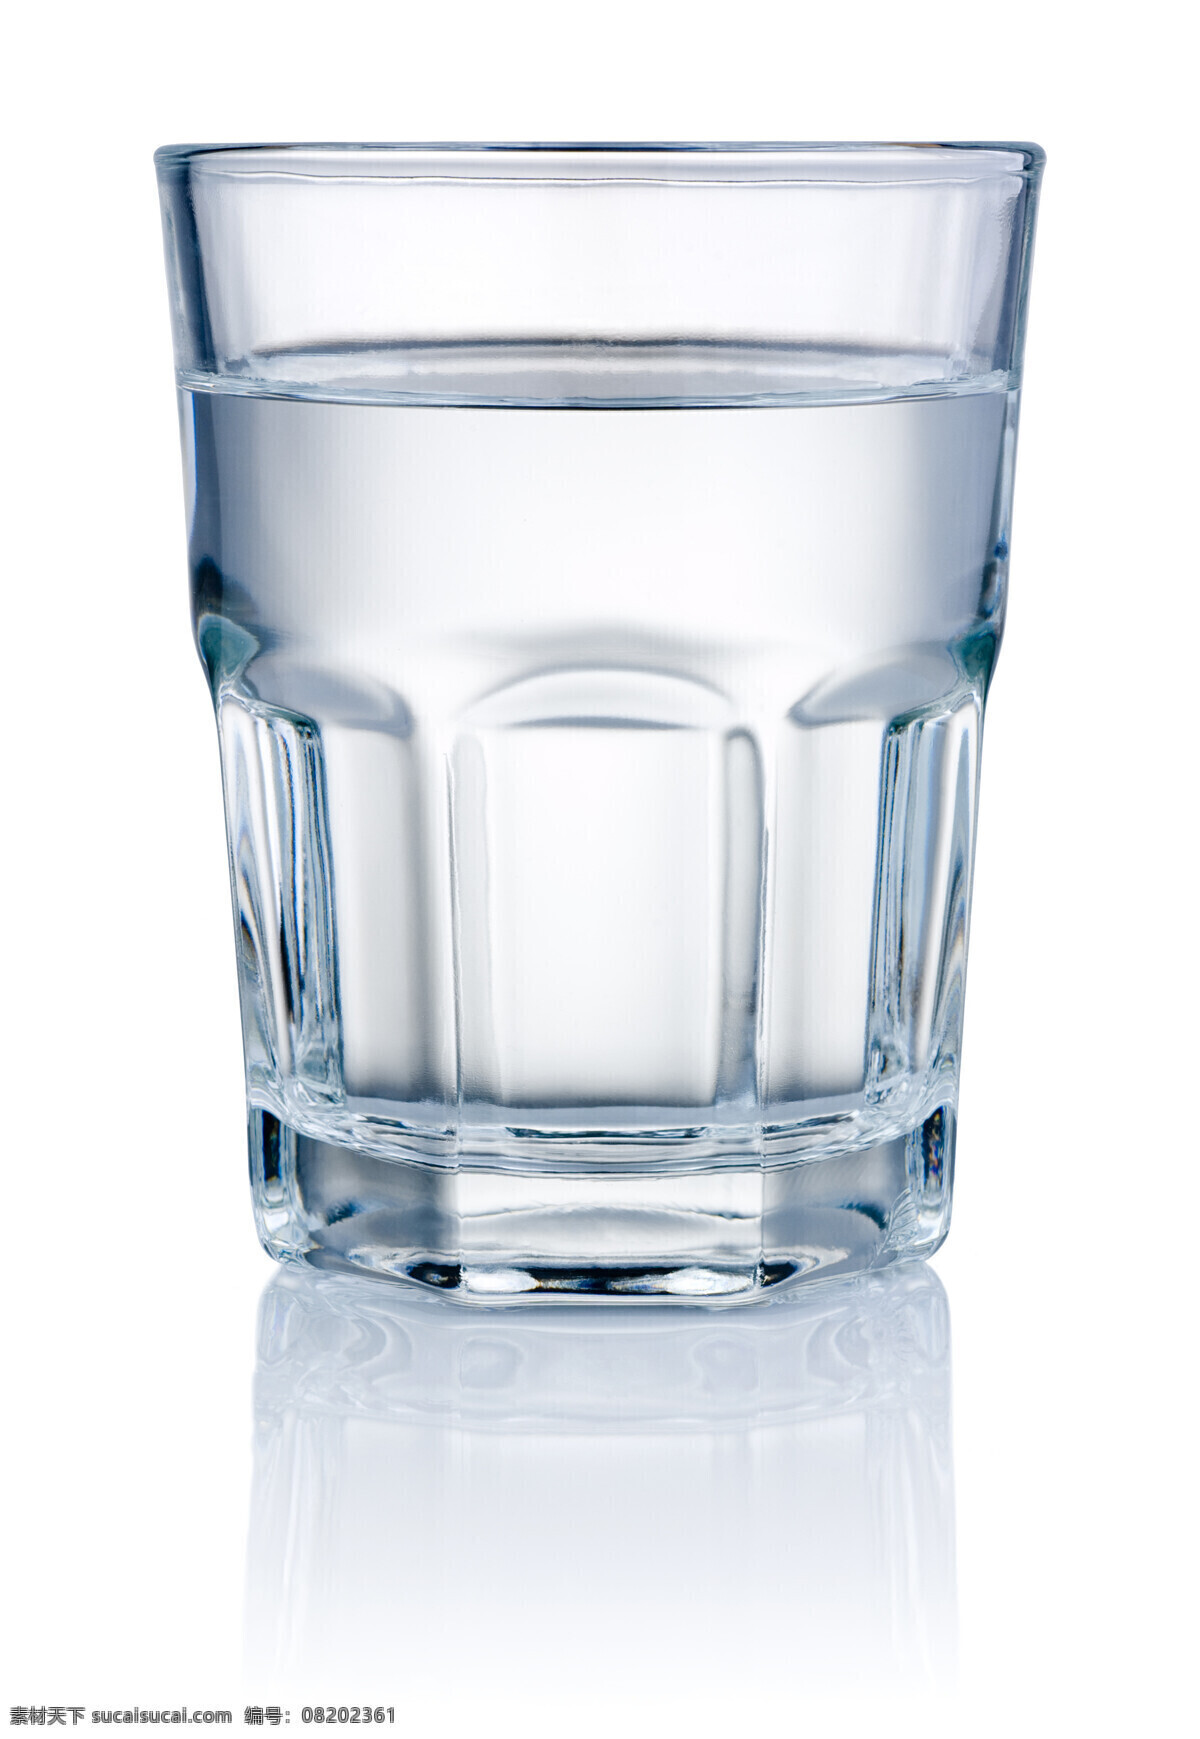 白水 纯水 一杯水 开水 白开水 水杯 玻璃杯 杯子 杯具 玻璃 透明 凉水 冰水 水 饮品 饮料 水波 水滴 气泡 餐饮美食 饮料酒水